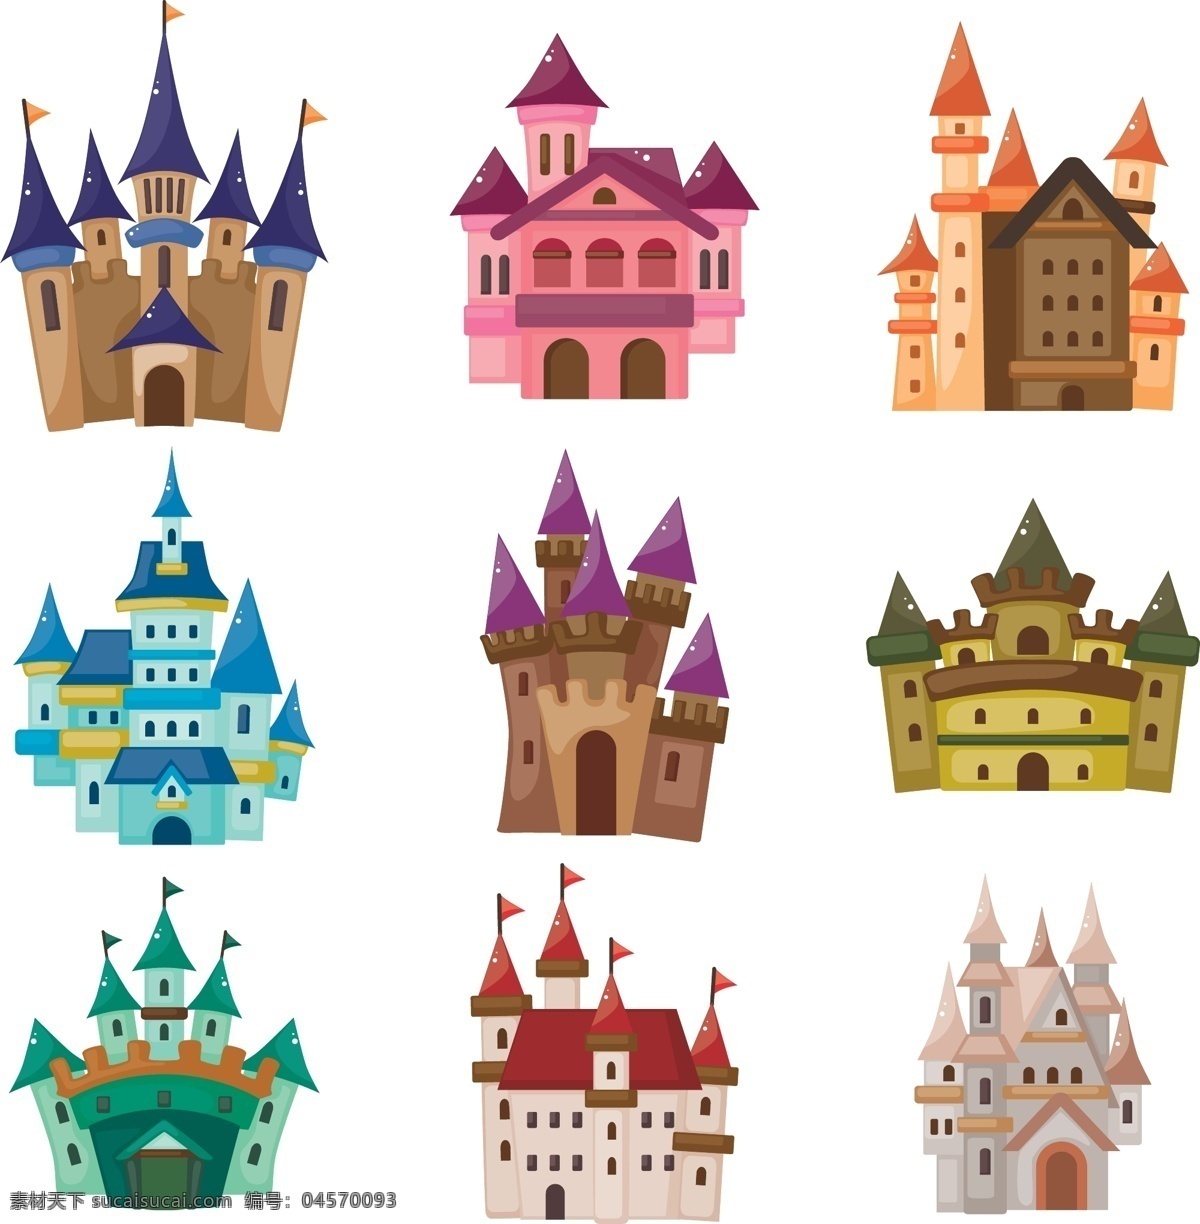 彩色 卡通 城堡 矢量图 卡通城堡 城堡素材 欧式城堡 童话城堡 城堡背景 梦幻城堡 城堡矢量 白色